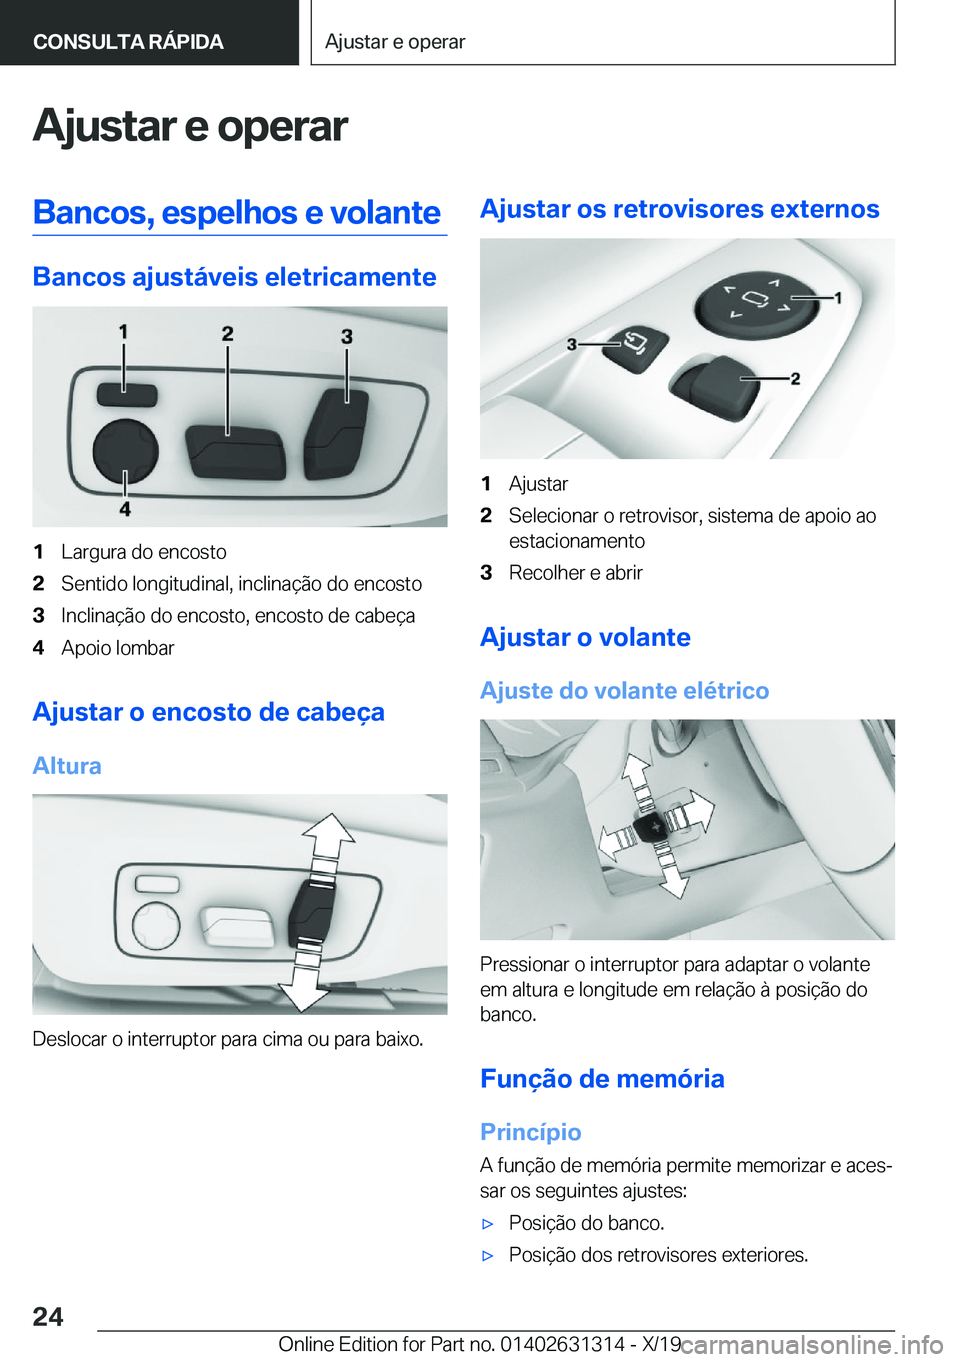 BMW M8 2020  Manual do condutor (in Portuguese) �A�j�u�s�t�a�r��e��o�p�e�r�a�r�B�a�n�c�o�s�,��e�s�p�e�l�h�o�s��e��v�o�l�a�n�t�e
�B�a�n�c�o�s��a�j�u�s�t�á�v�e�i�s��e�l�e�t�r�i�c�a�m�e�n�t�e
�1�L�a�r�g�u�r�a��d�o��e�n�c�o�s�t�o�2�S�e�n�t�i�